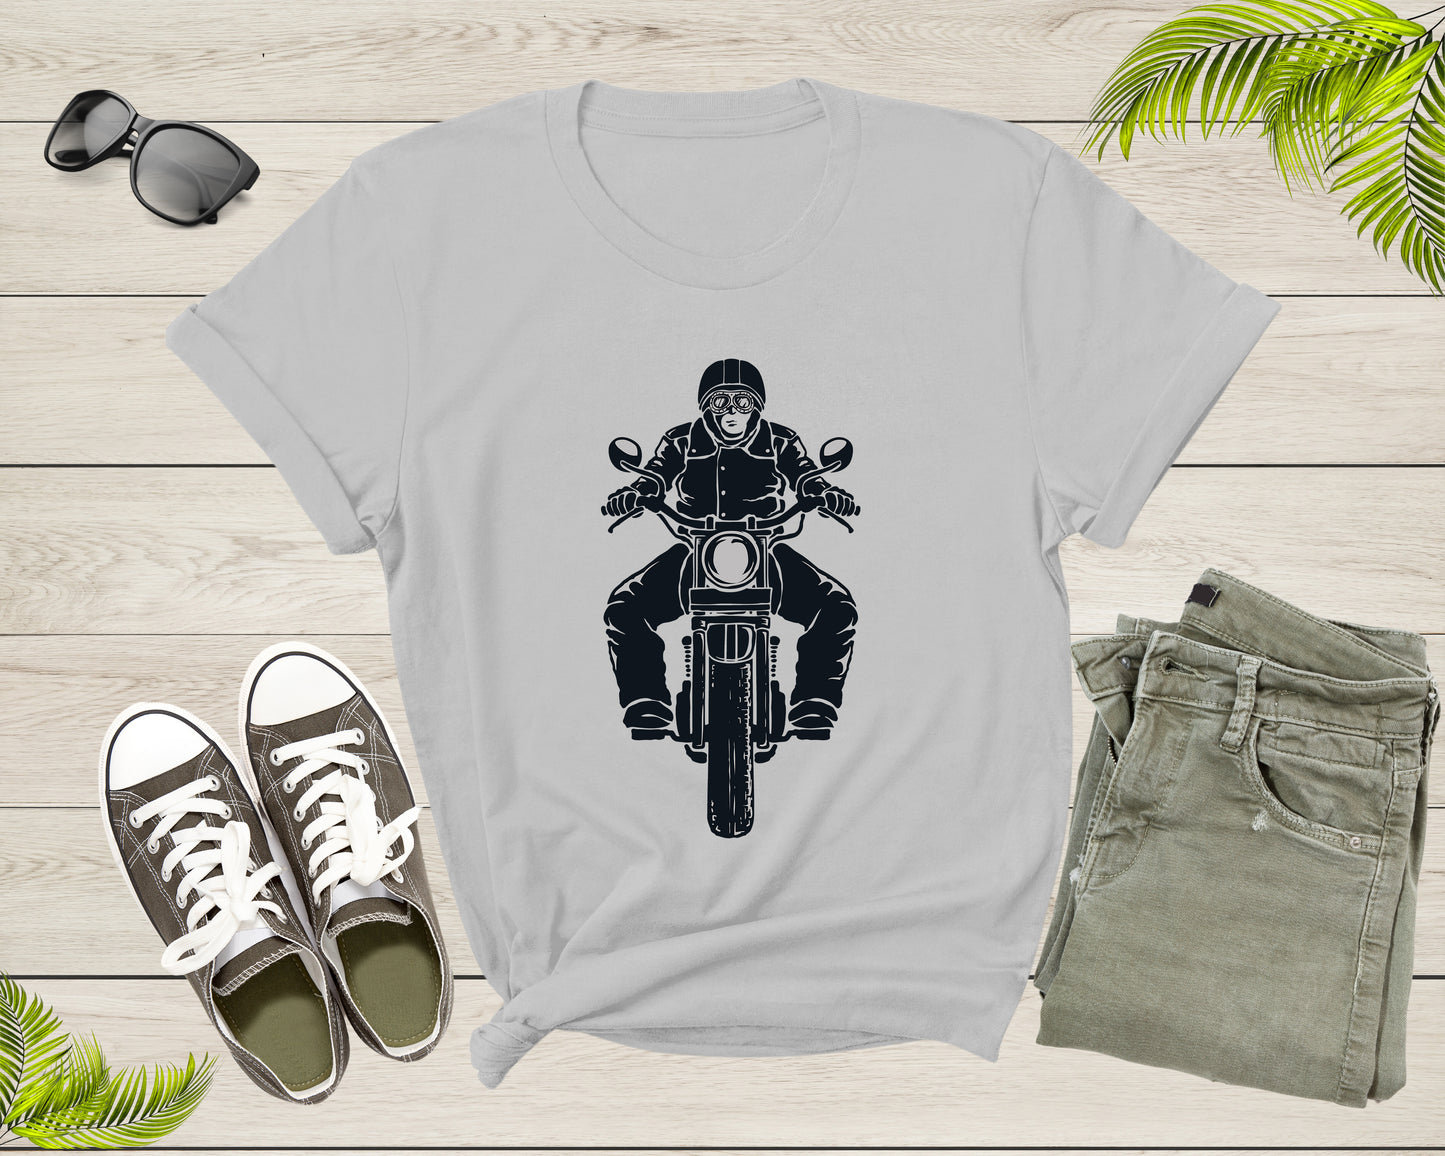 Cool Black Motorbike Biker Motorcycle For Men Women Kids T-shirt Mens Motorcycle Rider Shirt For Men Women Kids Teens Graphic Gift Tshirt